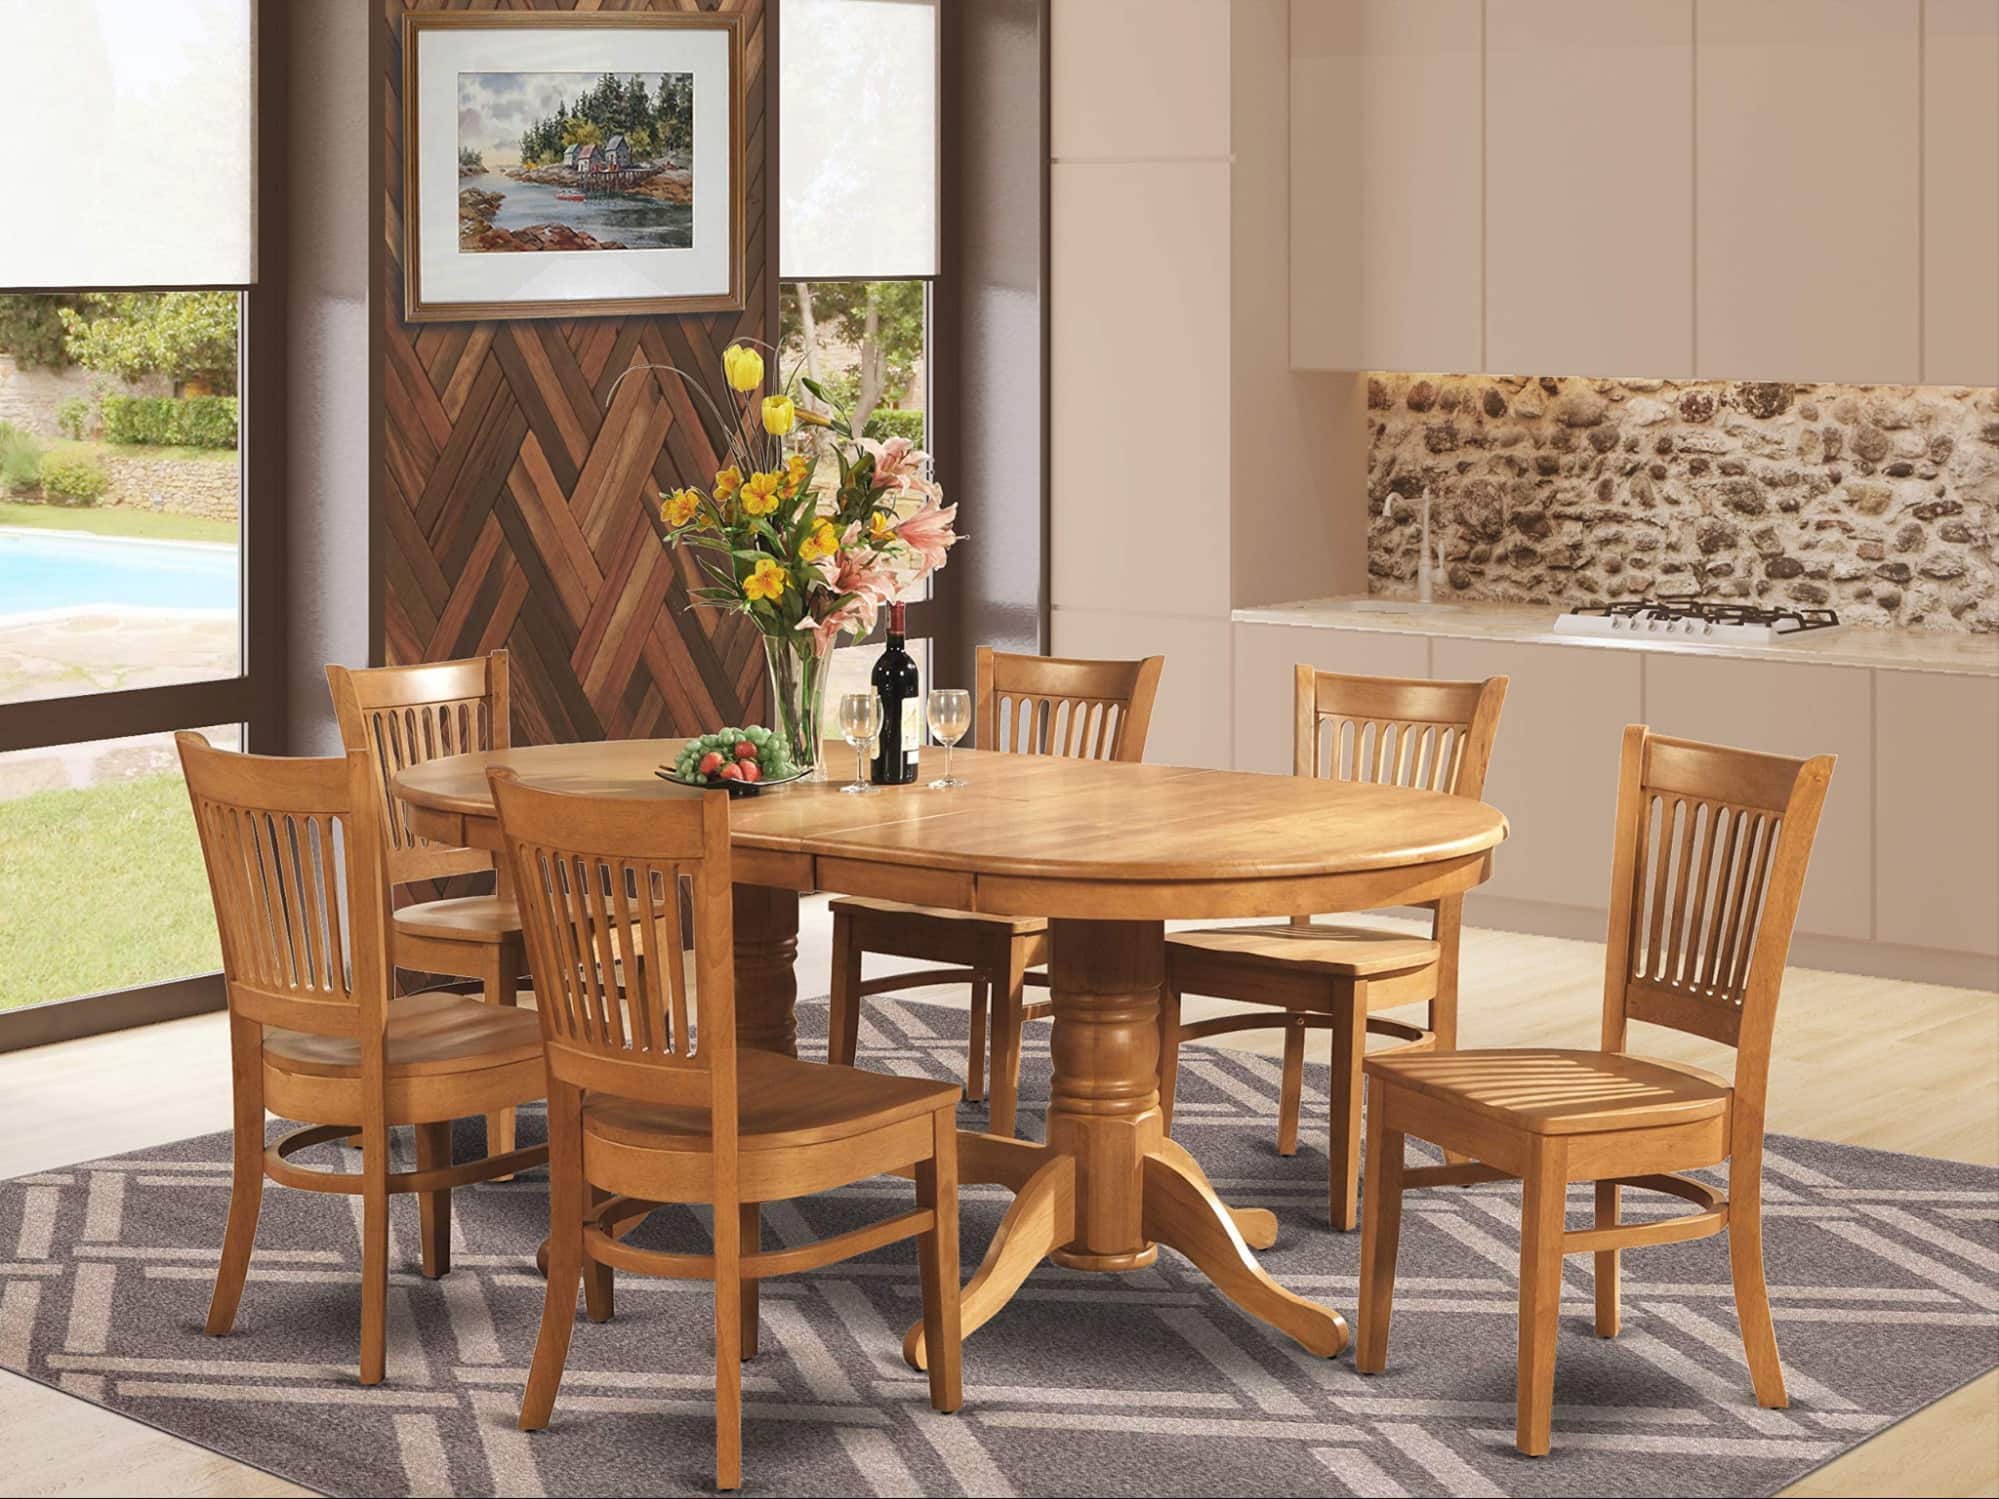 Mẫu bàn ăn 6 ghế được làm từ chất liệu gỗ sồi cao cấp